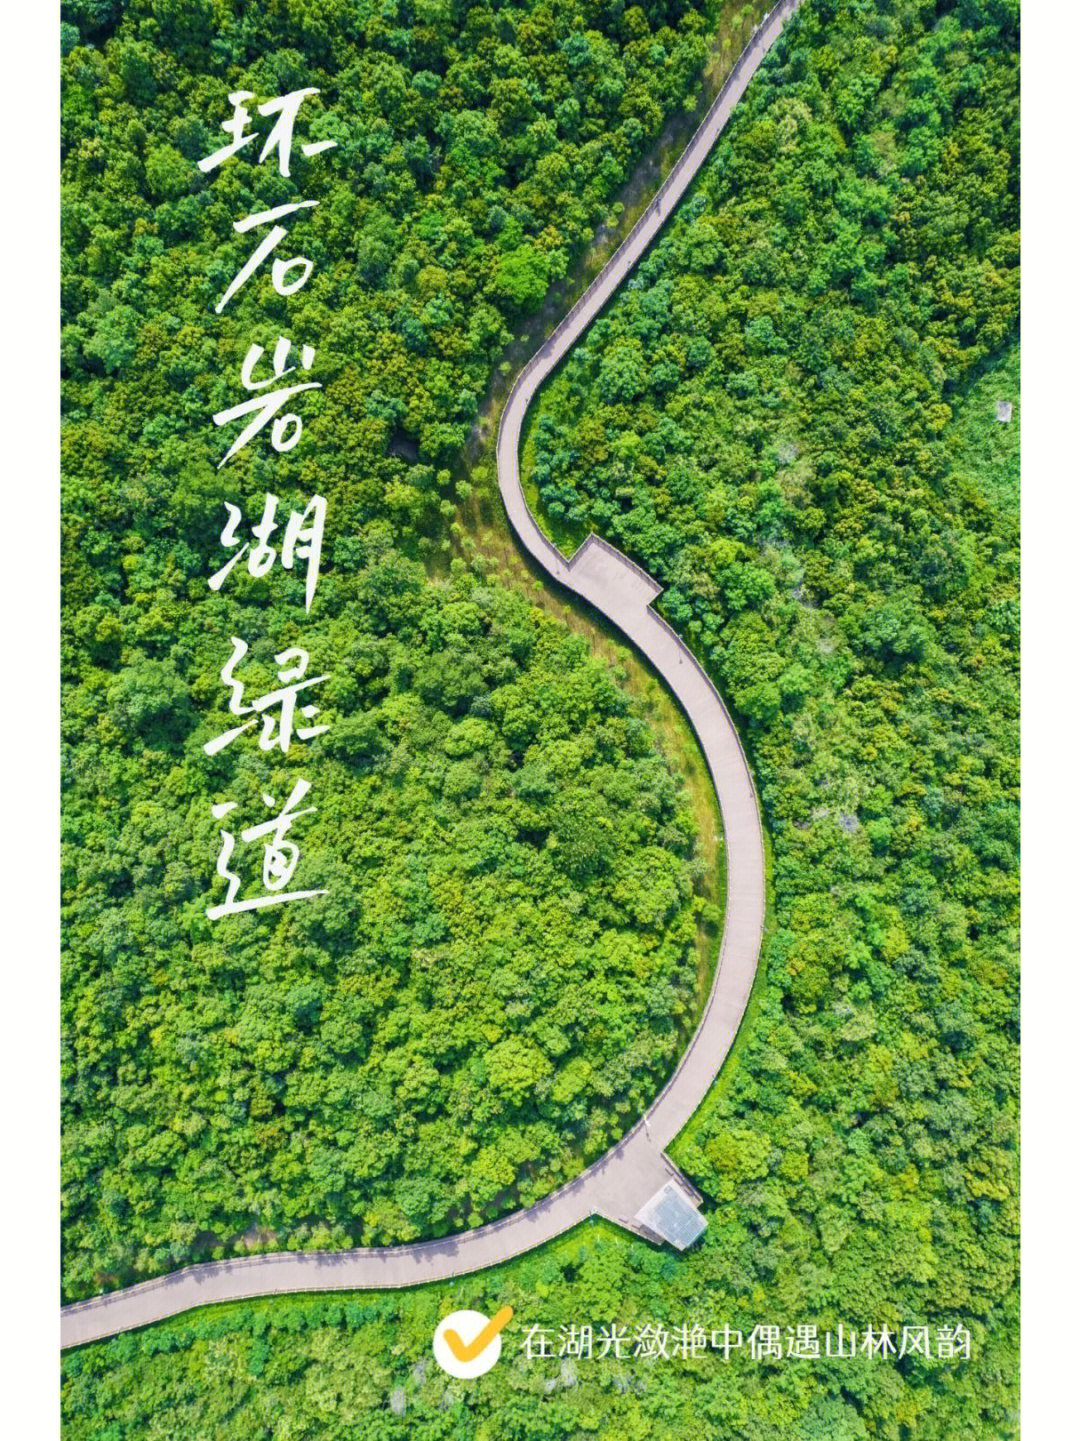 深圳石岩湖绿道地图图片